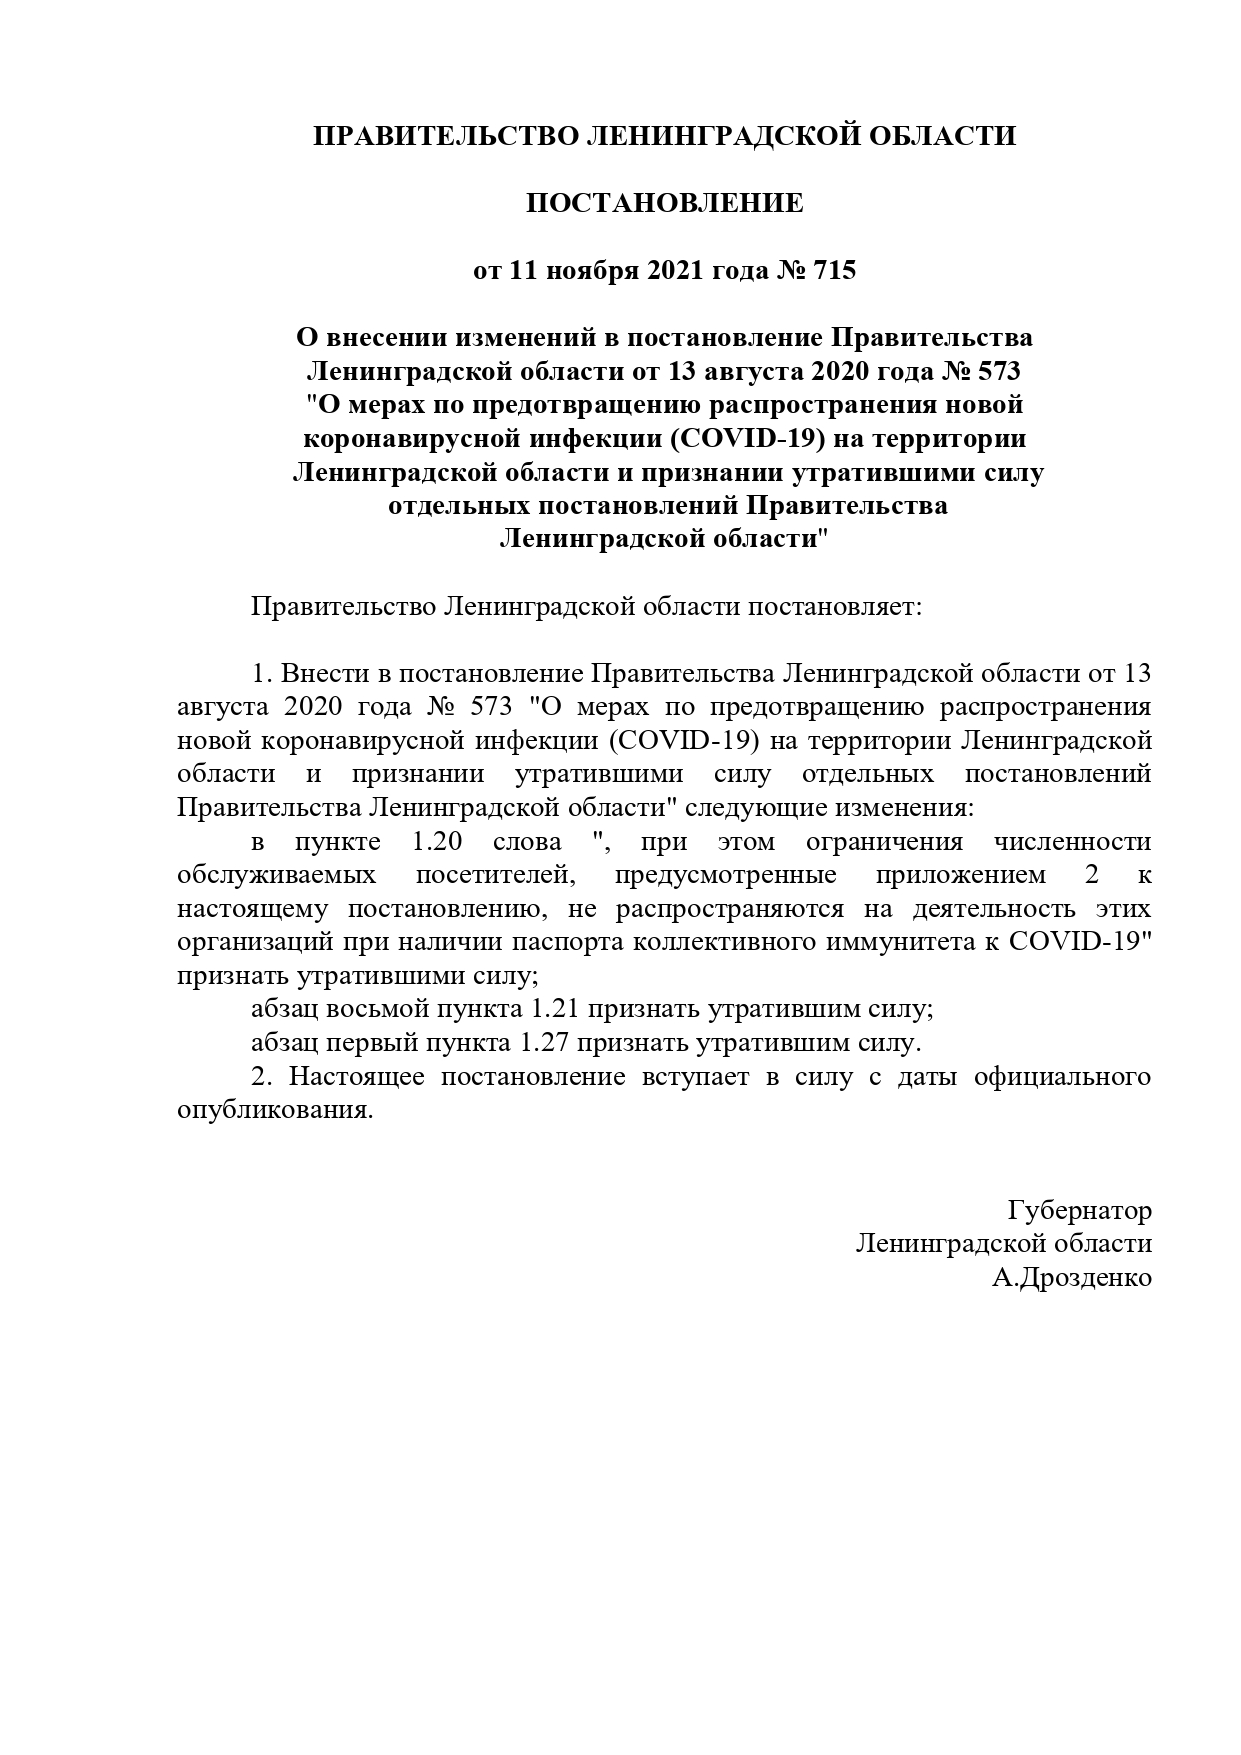 постановление Правительства Ленинградской области от 11 ноября 2021 года № 715